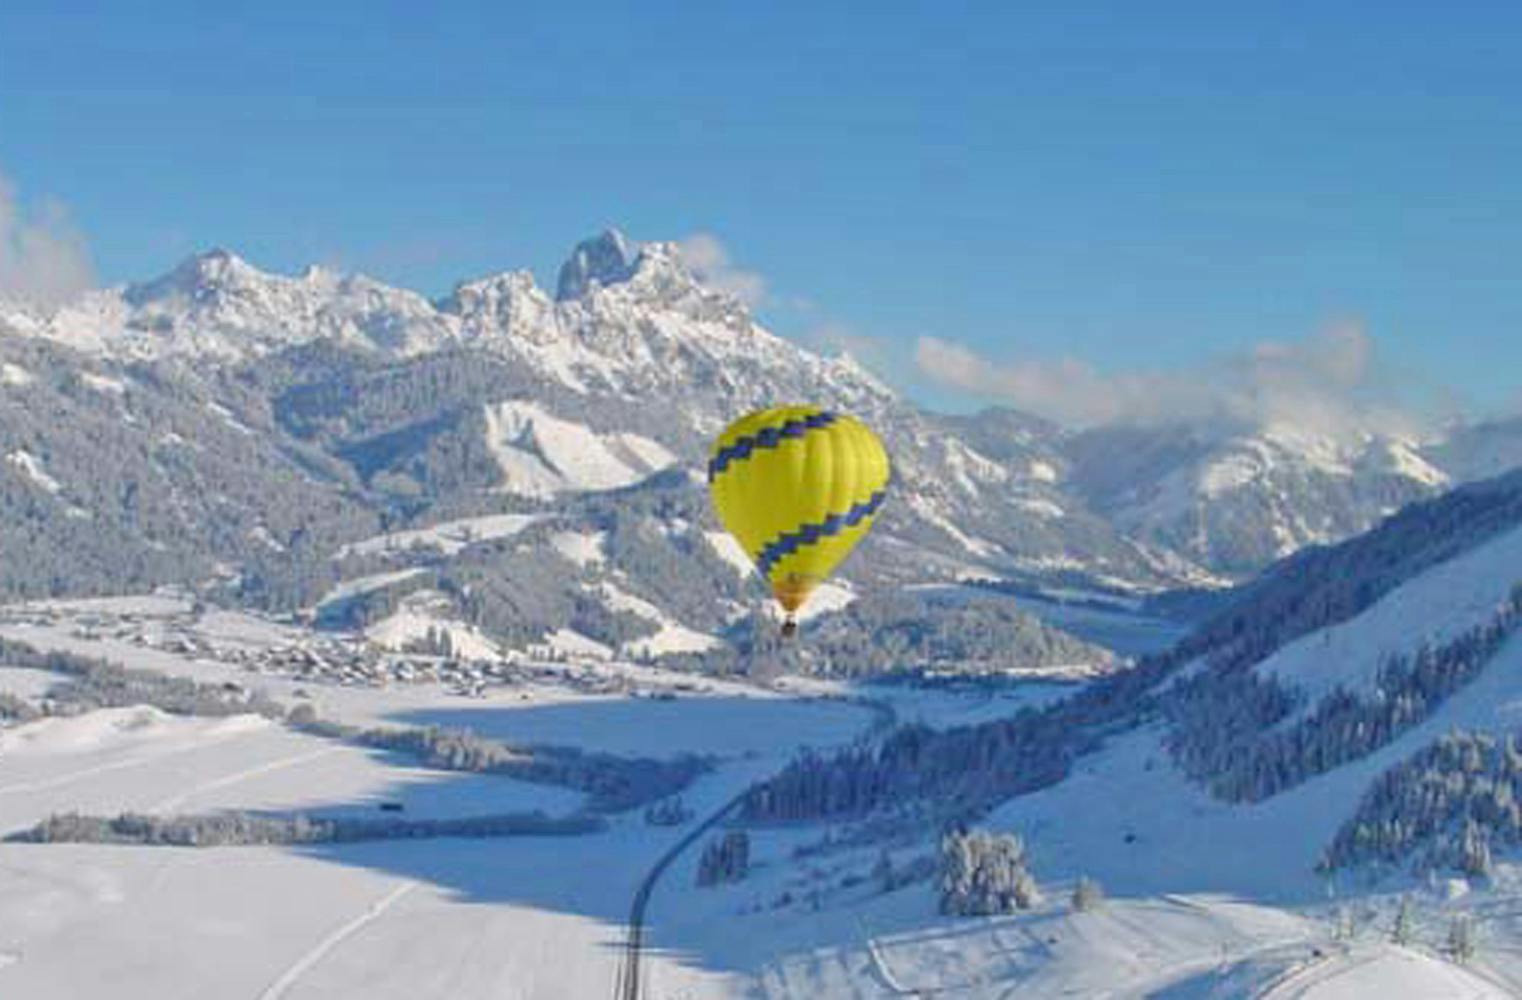 Fahrt im Heißluftballon | über verschneite Gipfel | Tirol